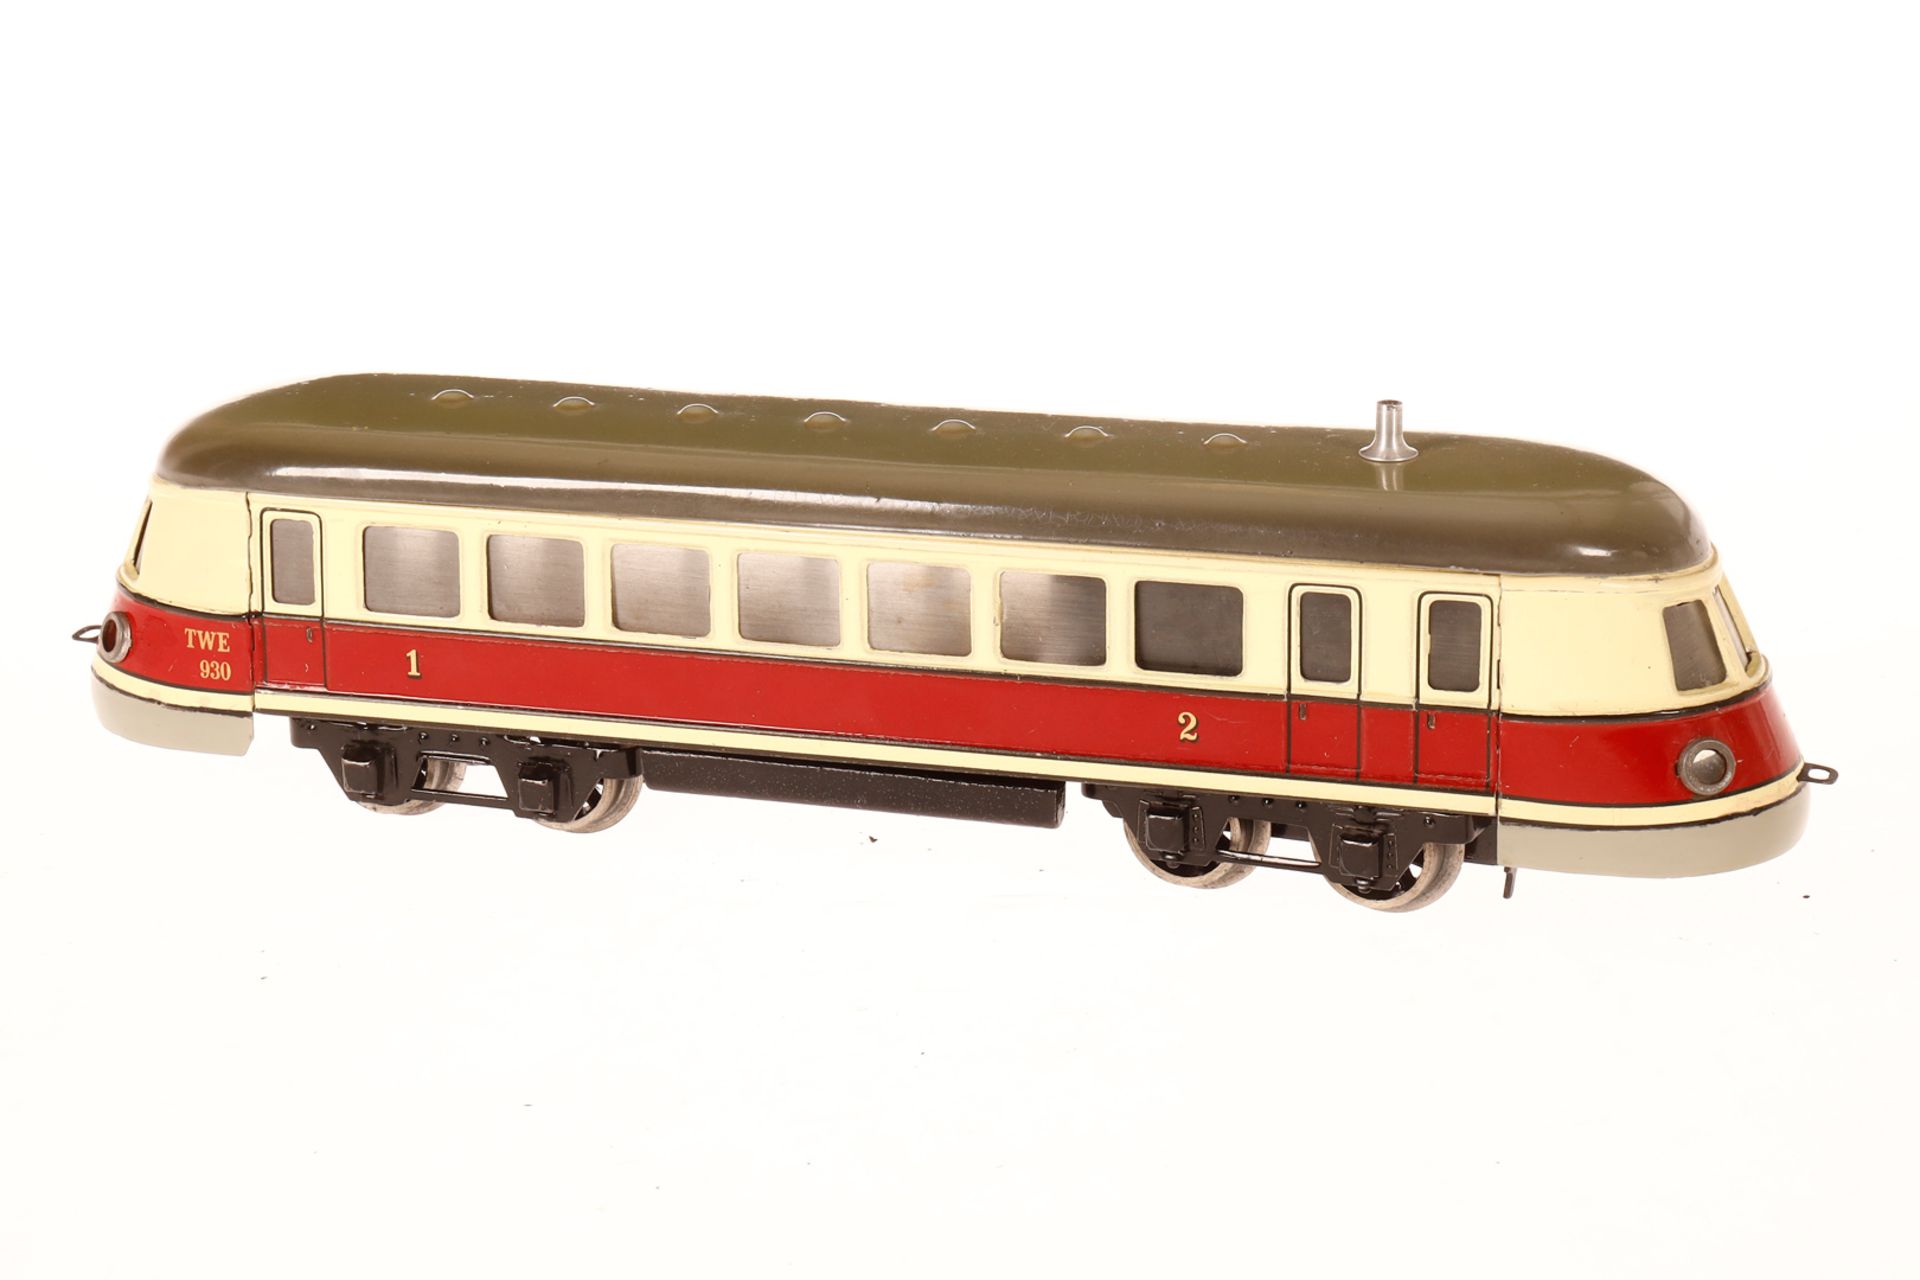 Märklin Triebwagen TWE 930, Spur 0, Uhrwerk intakt, rot/creme handlackiert, min. Gebrauchsspuren, - Image 2 of 3